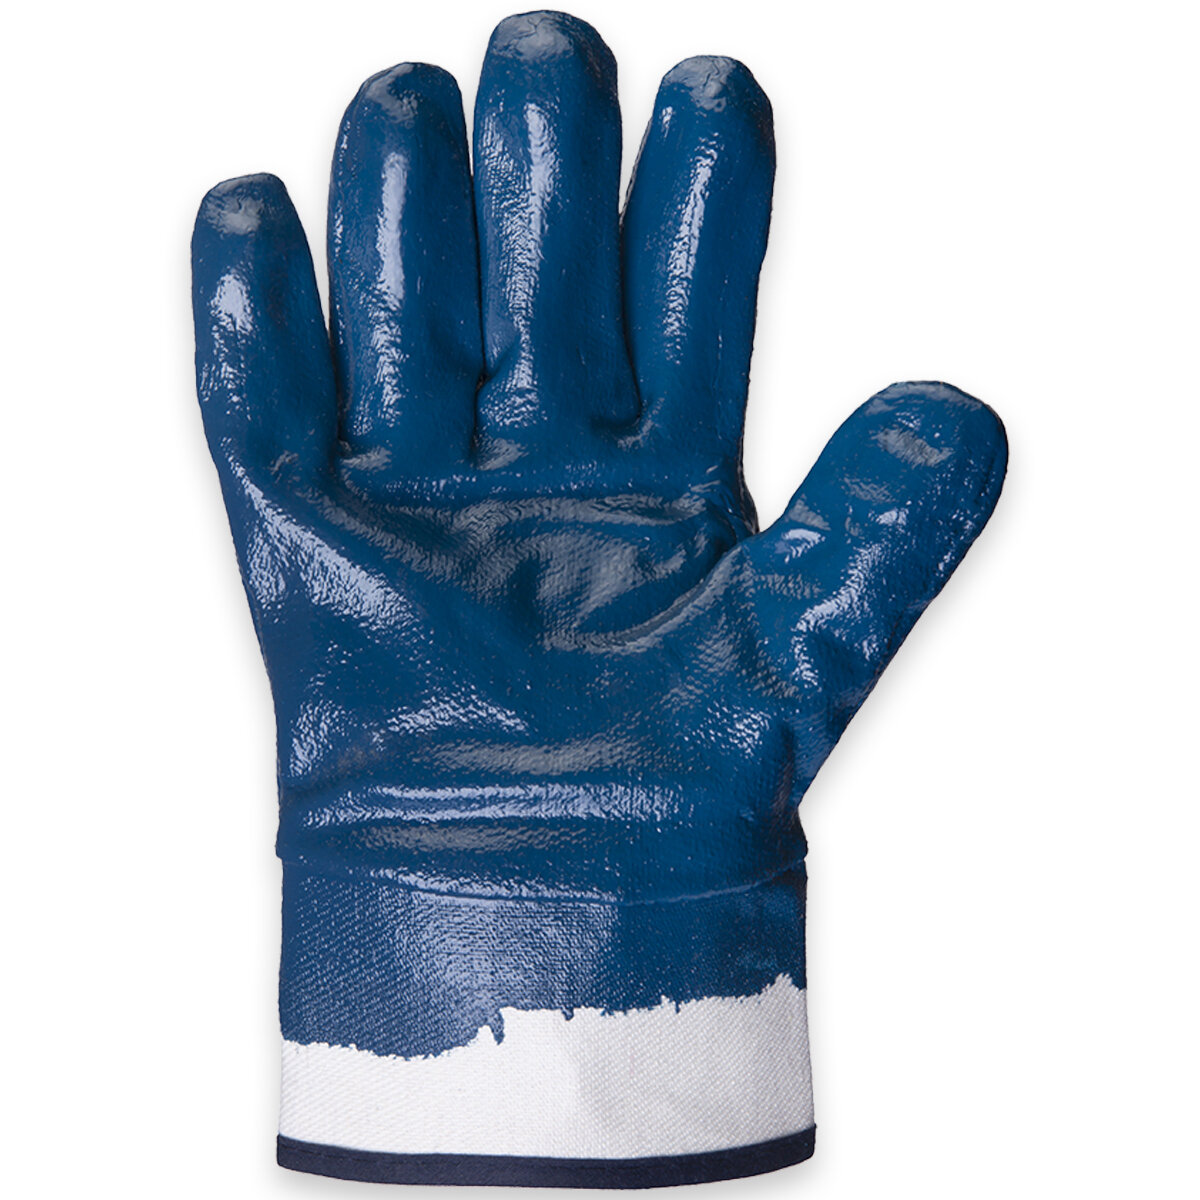 Масло-бензостойкие перчатки JN069 с нитриловым покрытием, размер XL, 1 пара